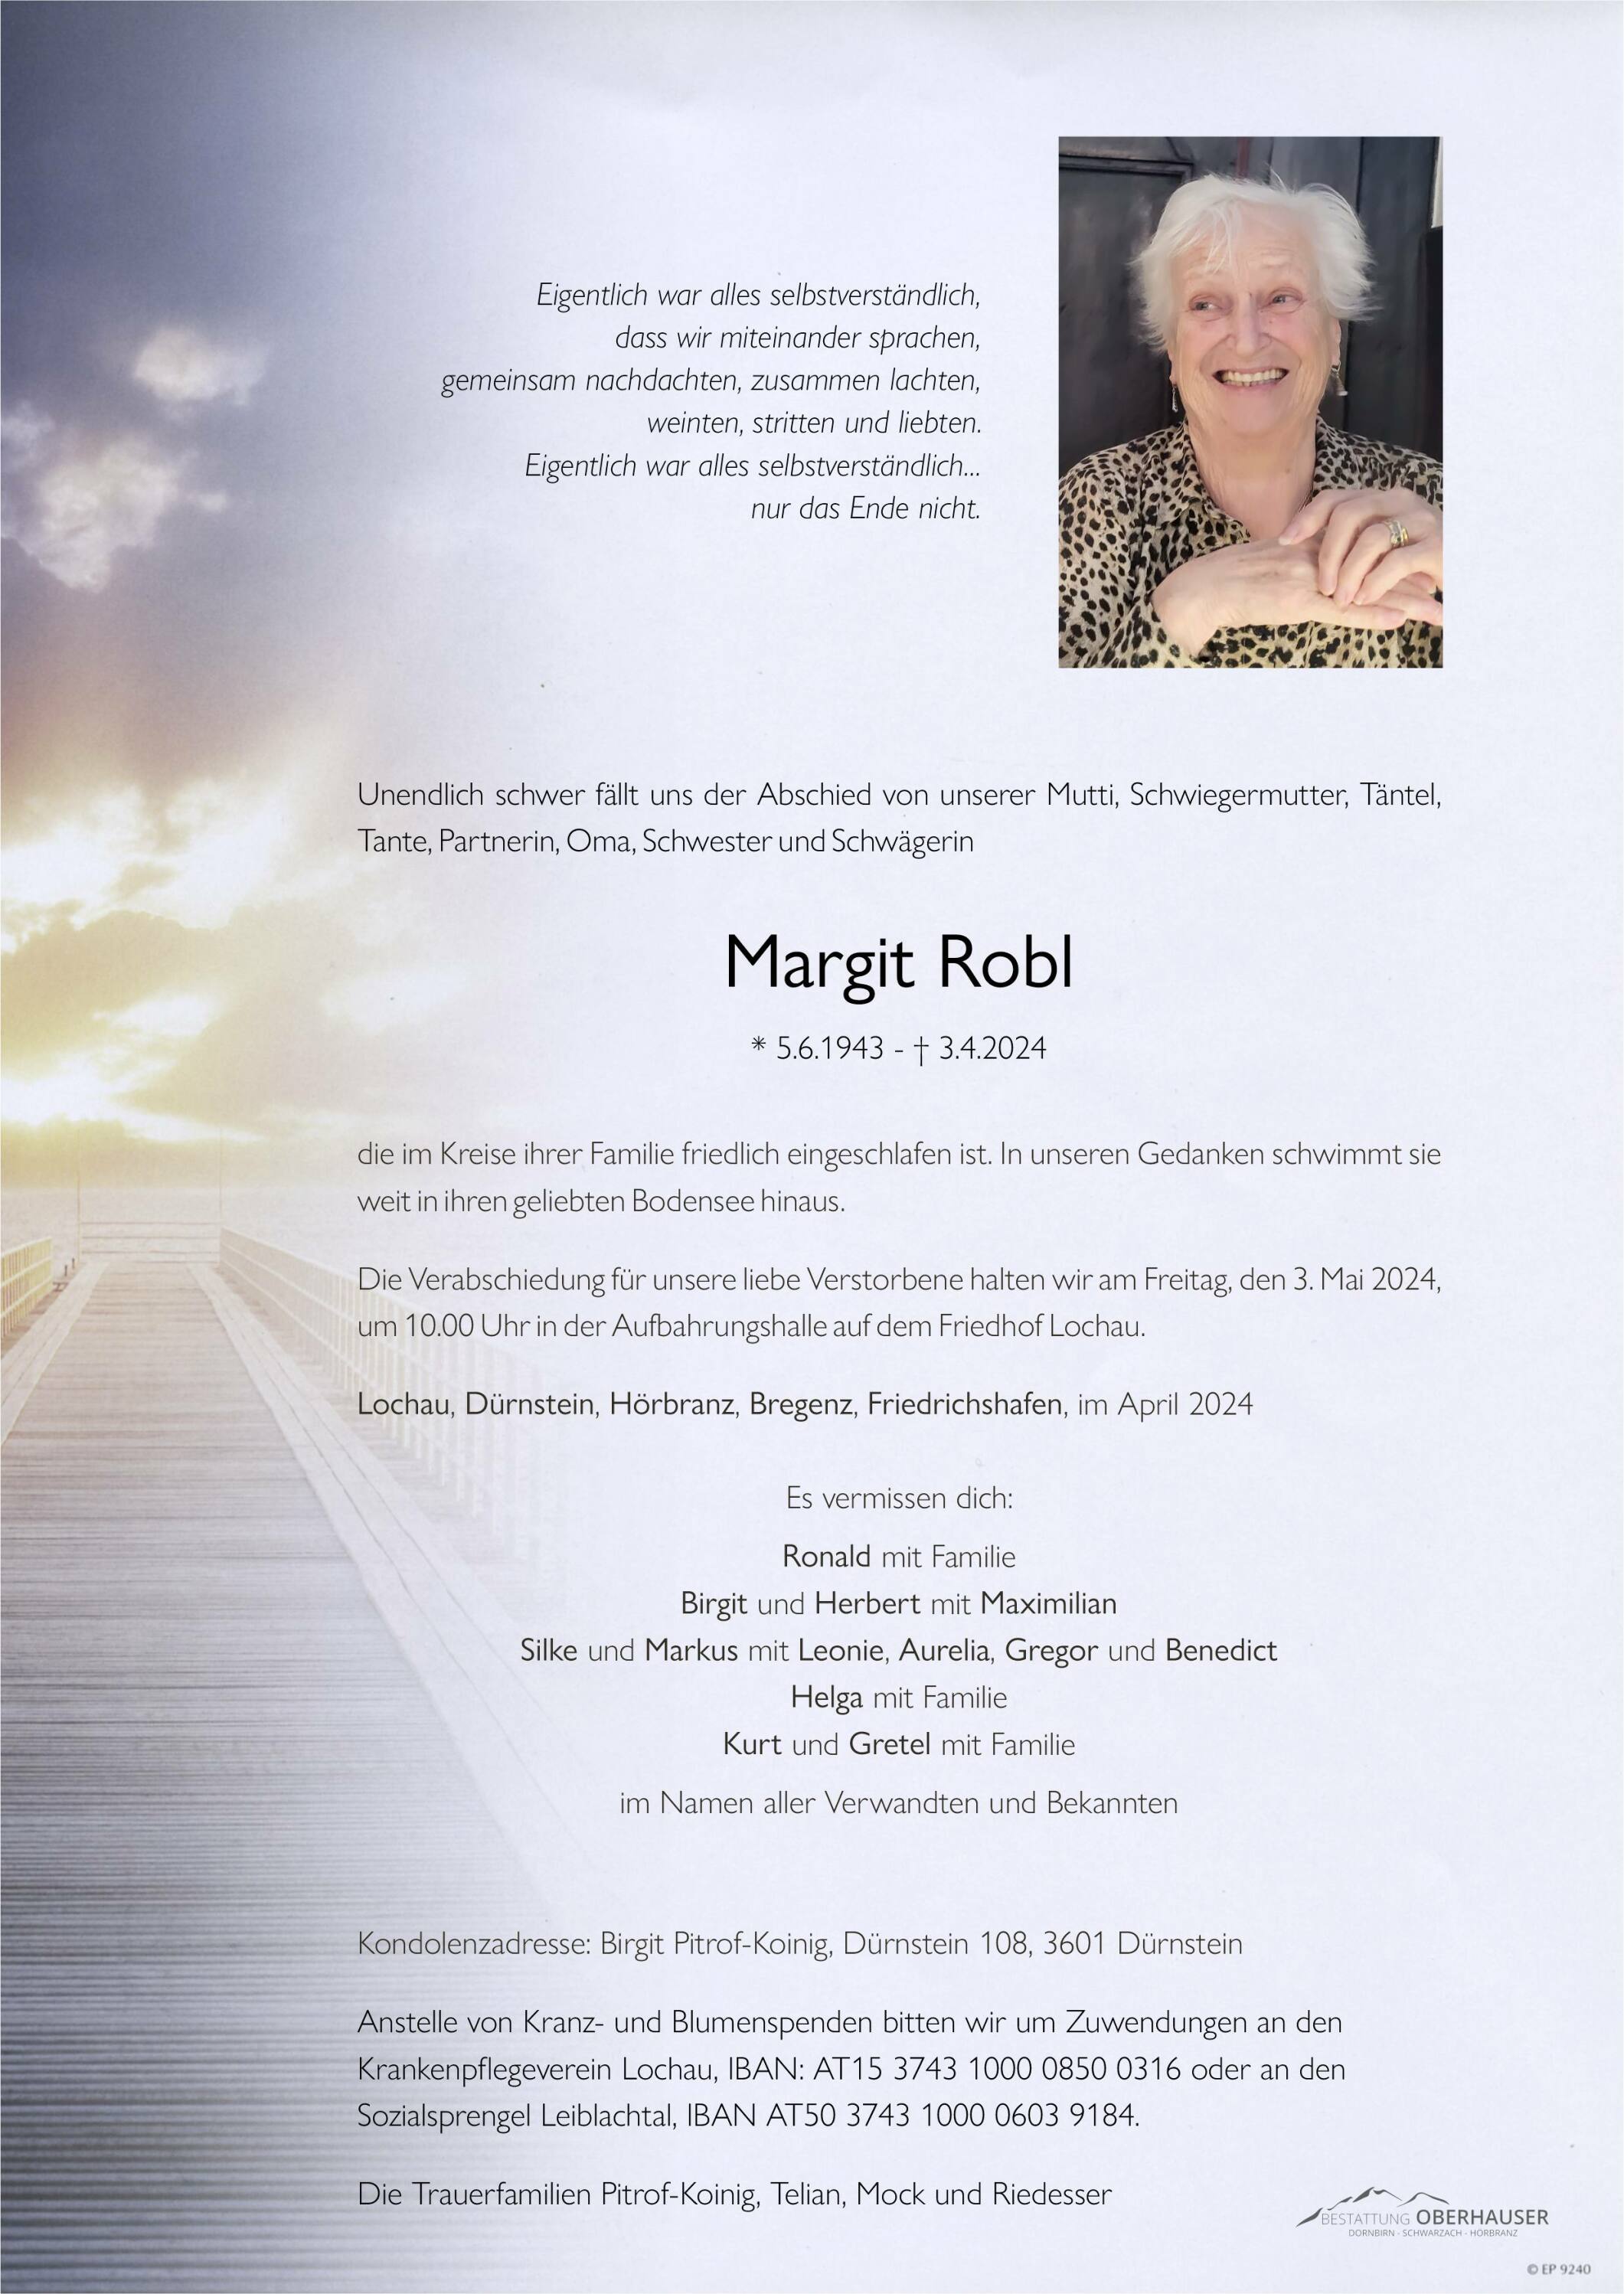 Margit Robl